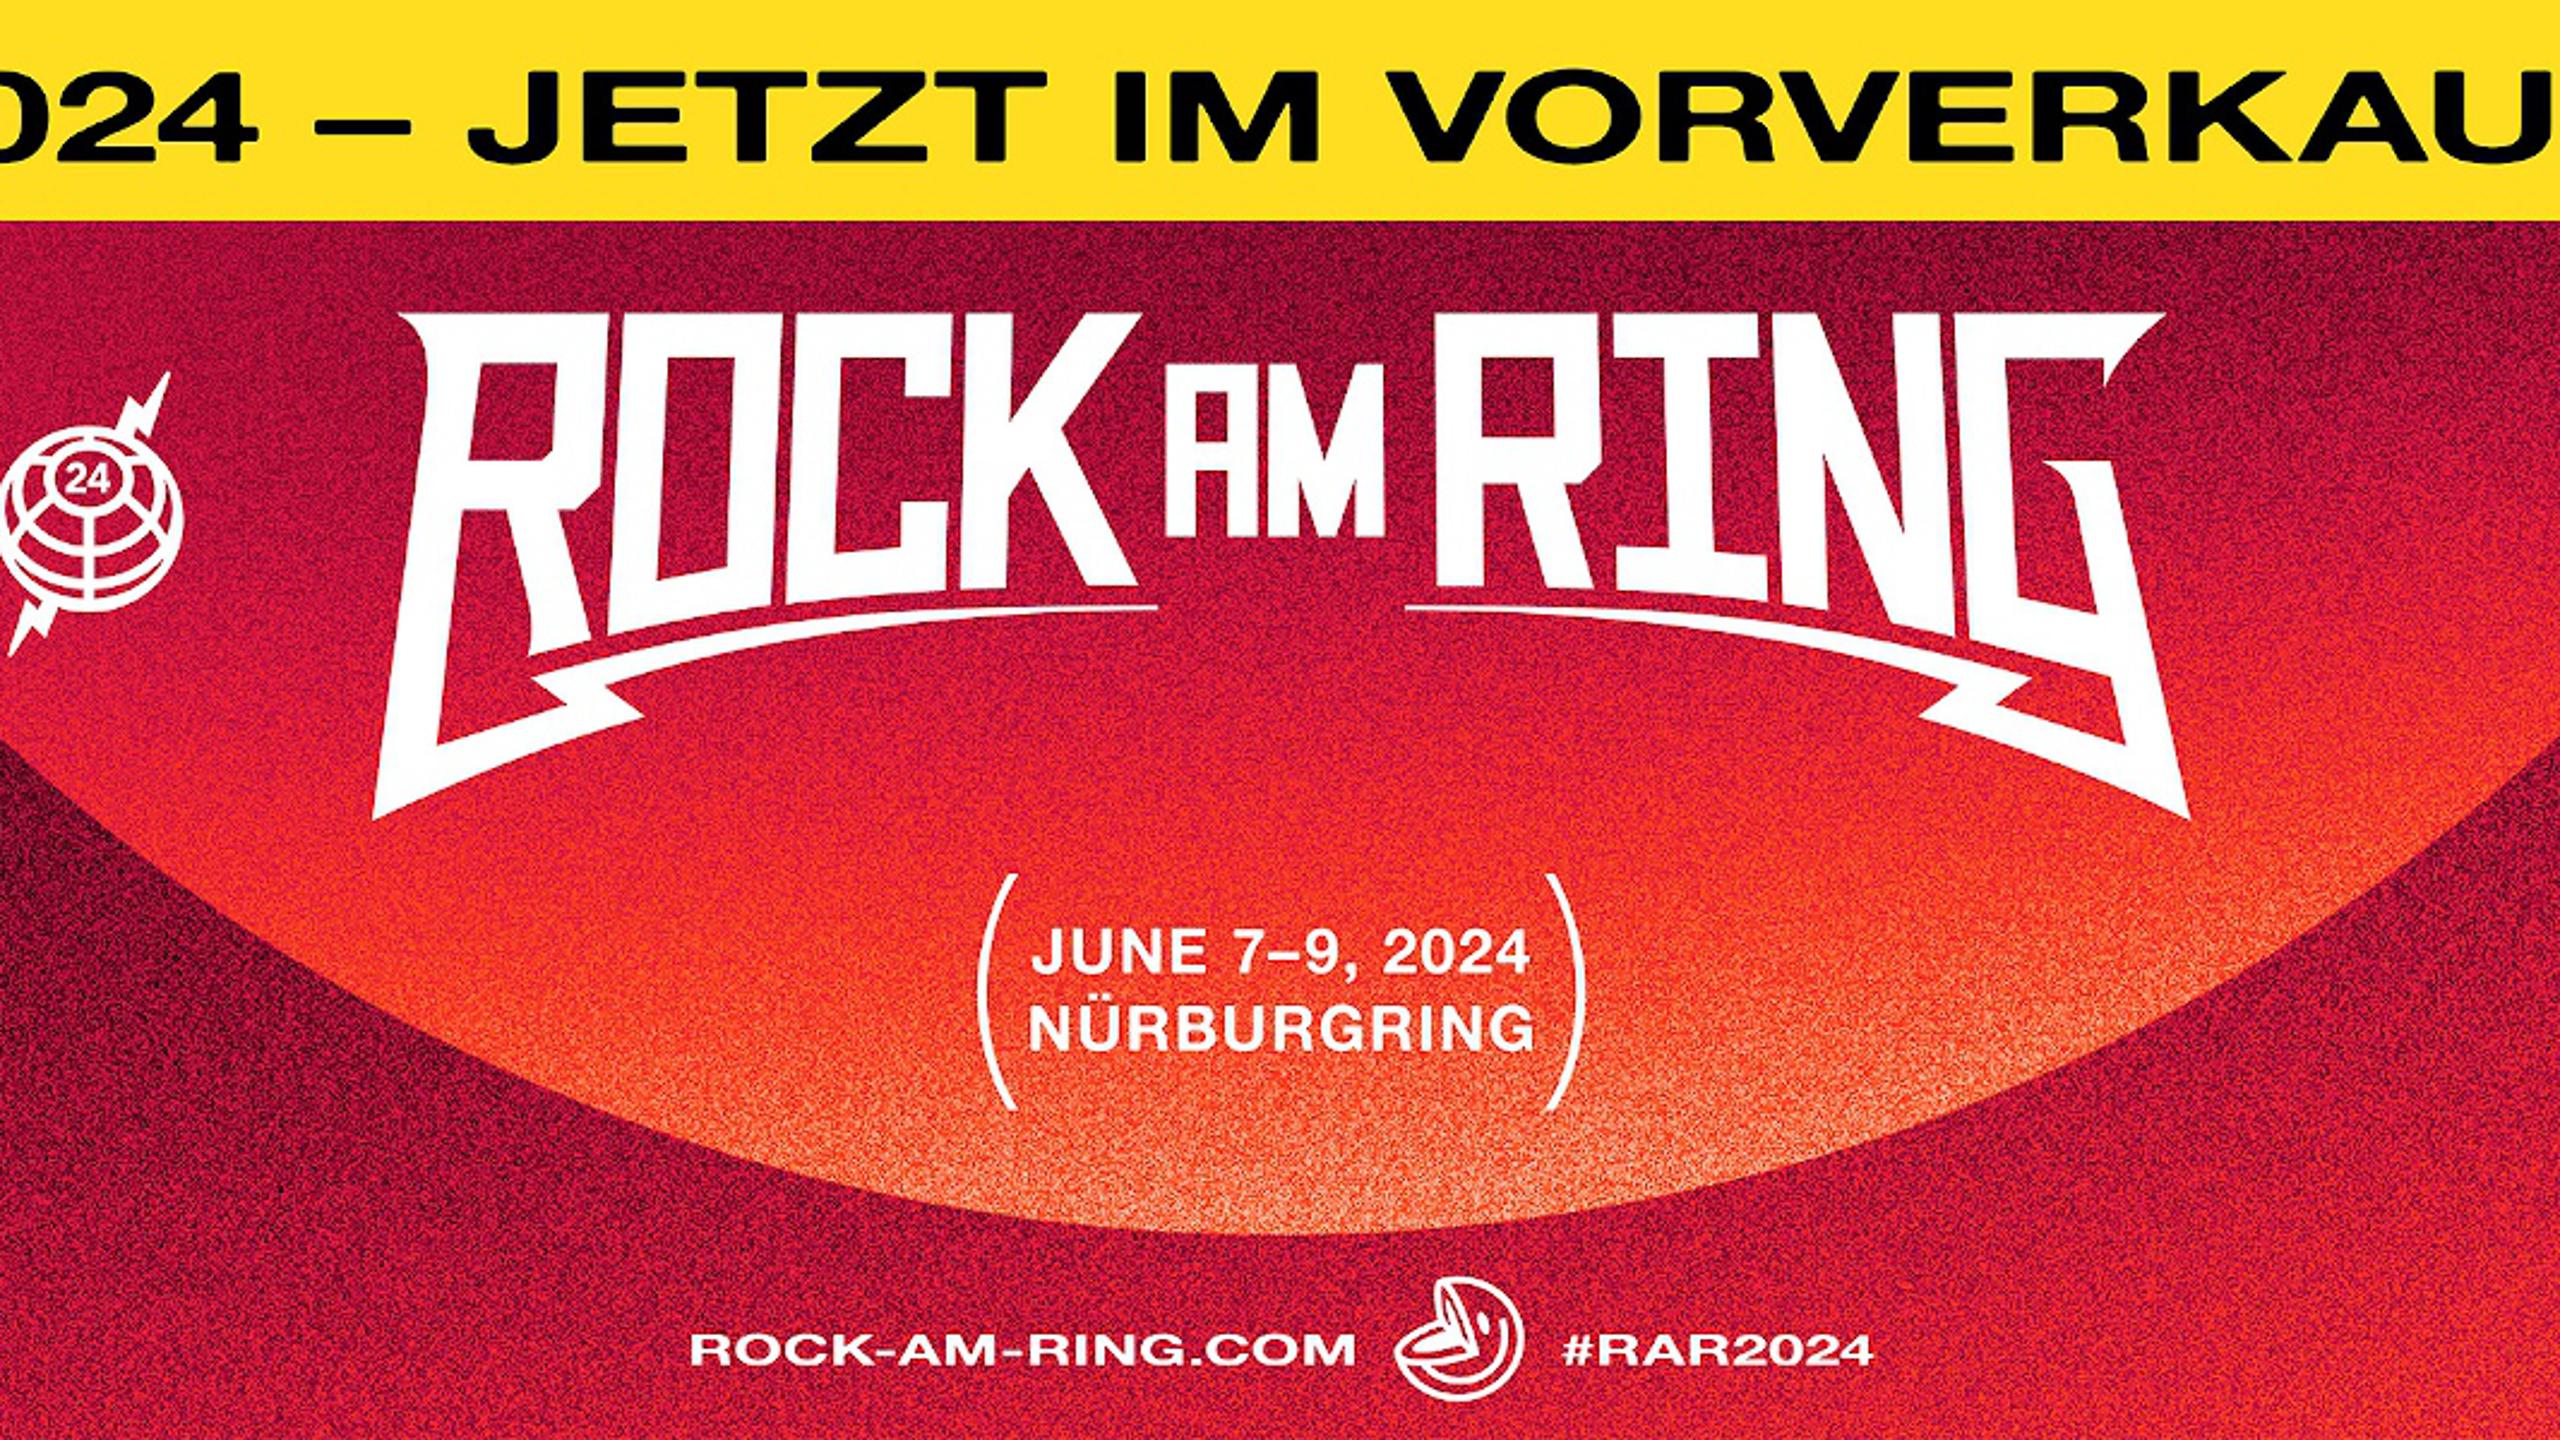 Promofoto von Rock am Ring 2024.